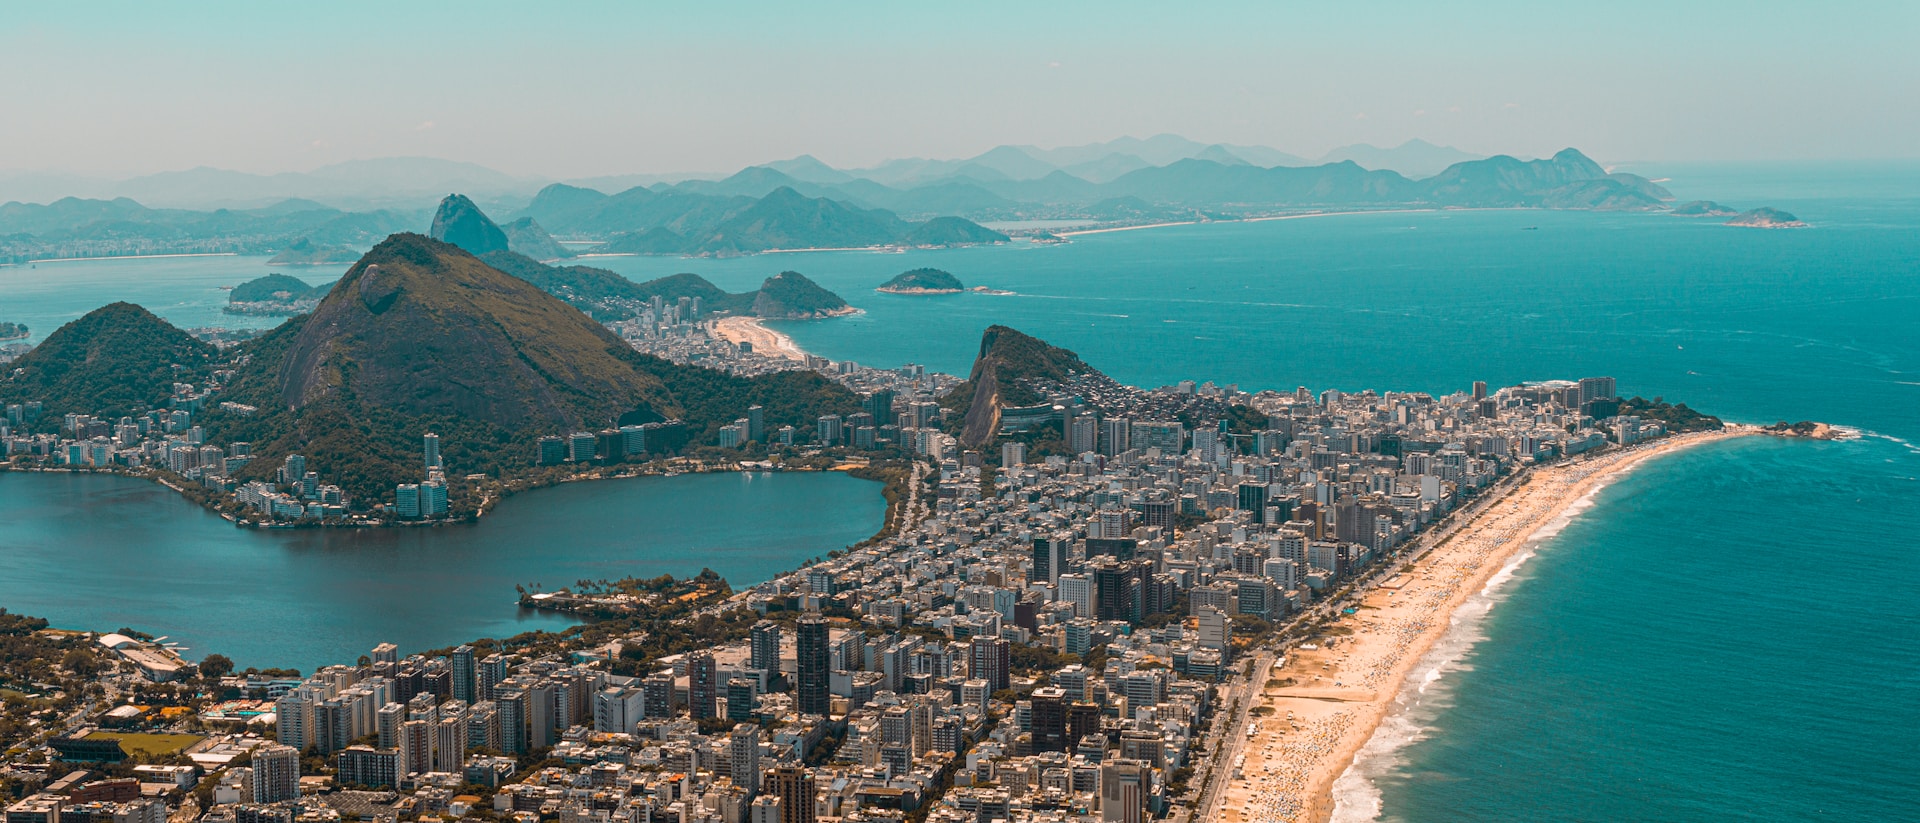 Things to Do in Rio de Janeiro